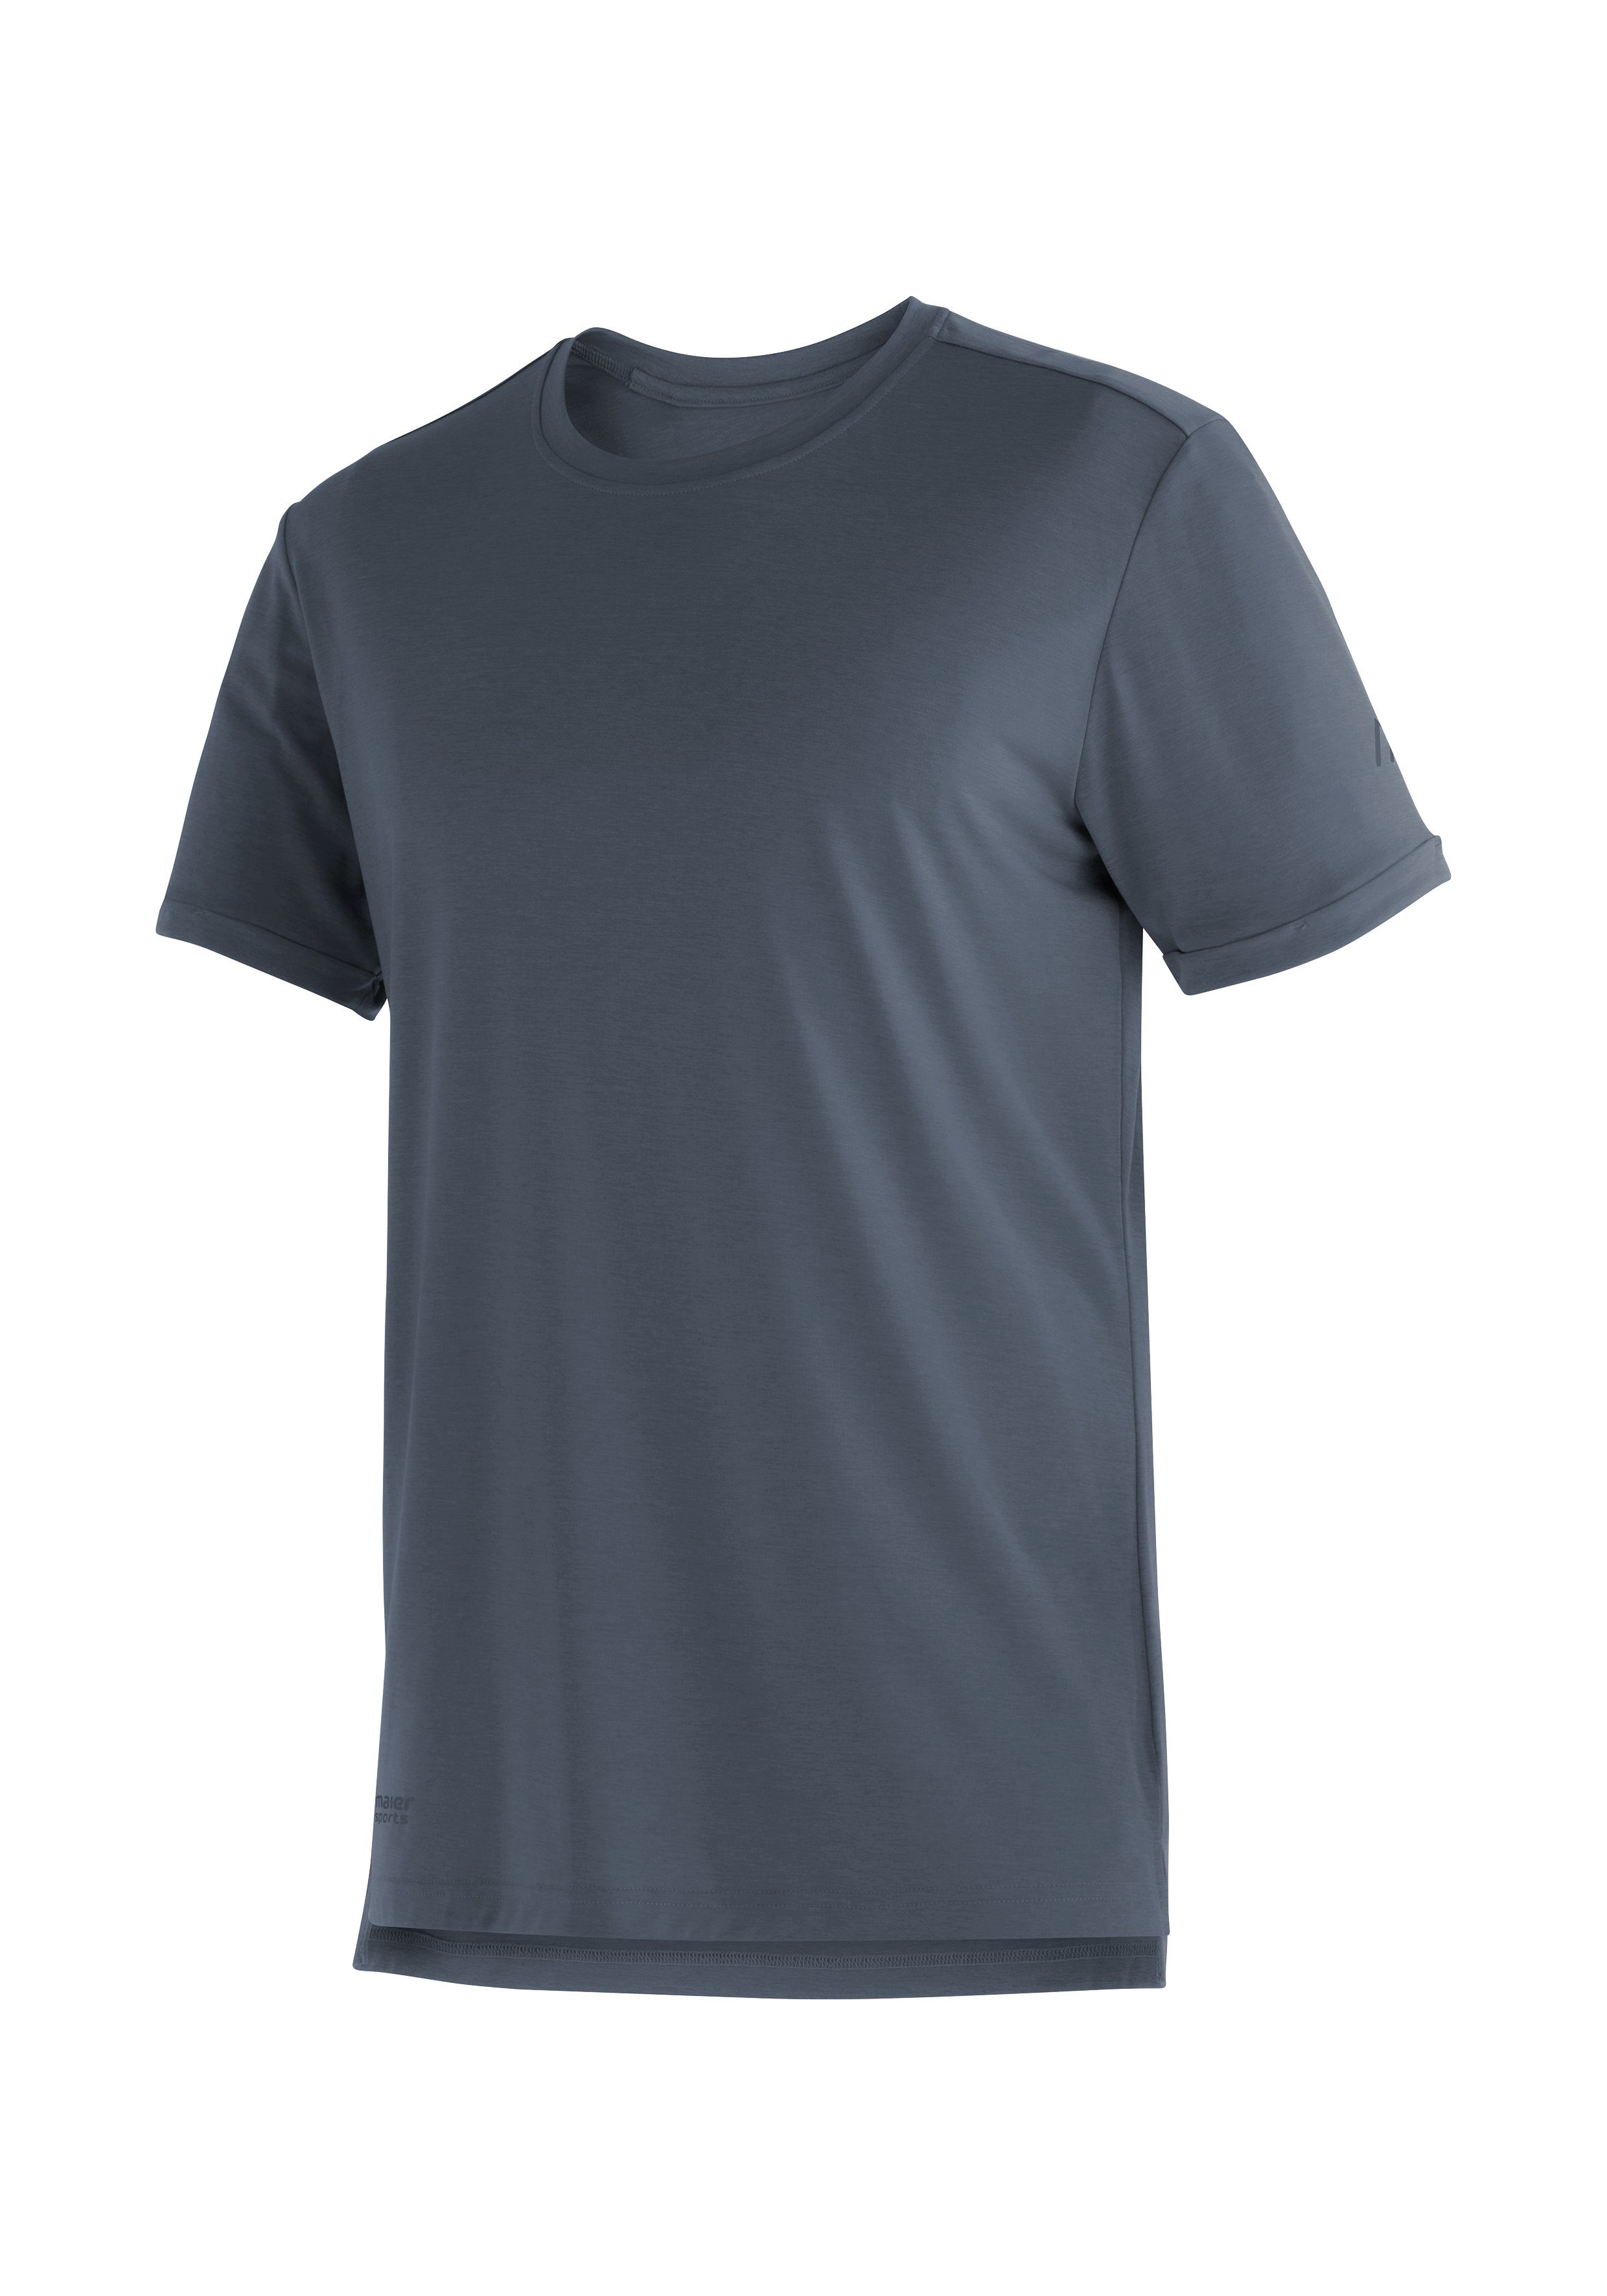 Maier Sports T-Shirt Horda S/S M Herren Kurzarmshirt für Wandern und Freizeit graublau